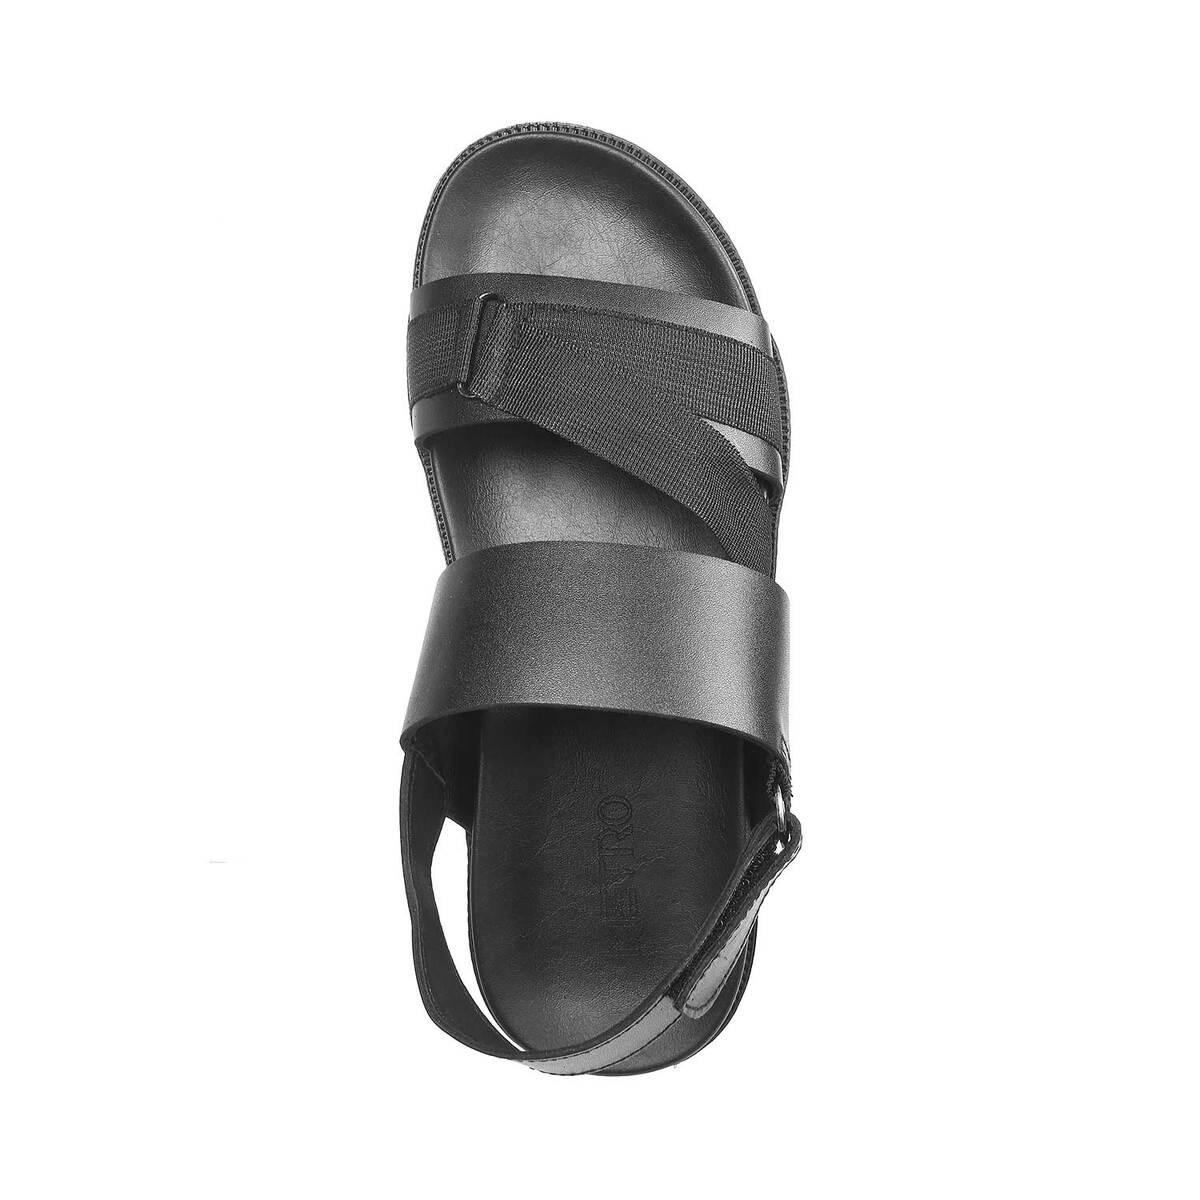 John Karsun - Black Men's Sandals - Buy John Karsun - Black Men's Sandals  Online at Best Prices in India on Snapdeal